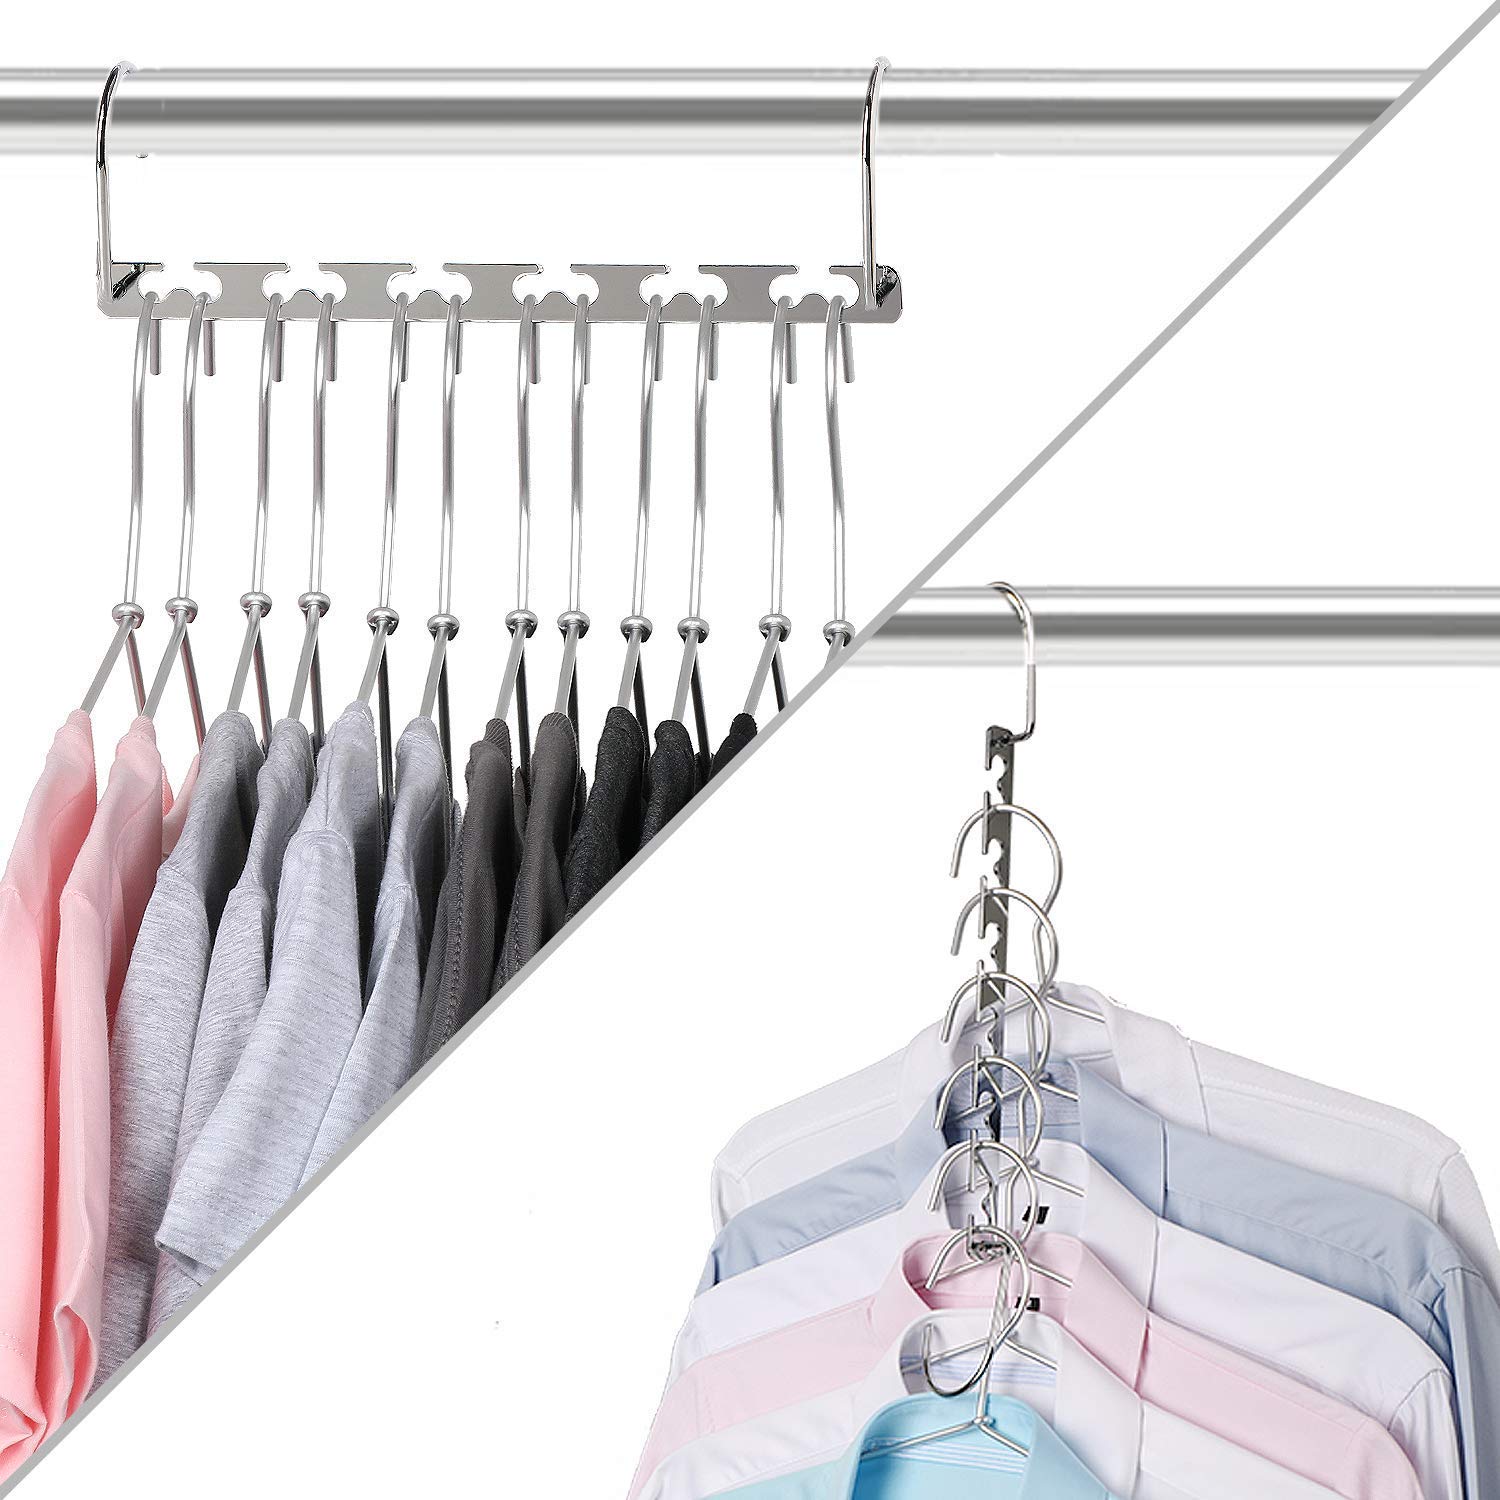 Metal Magic Hanger Space Saver Saving Wonder Clothes Closet-Organizer Hooks Saving Wardrobe Space, Updated Hook